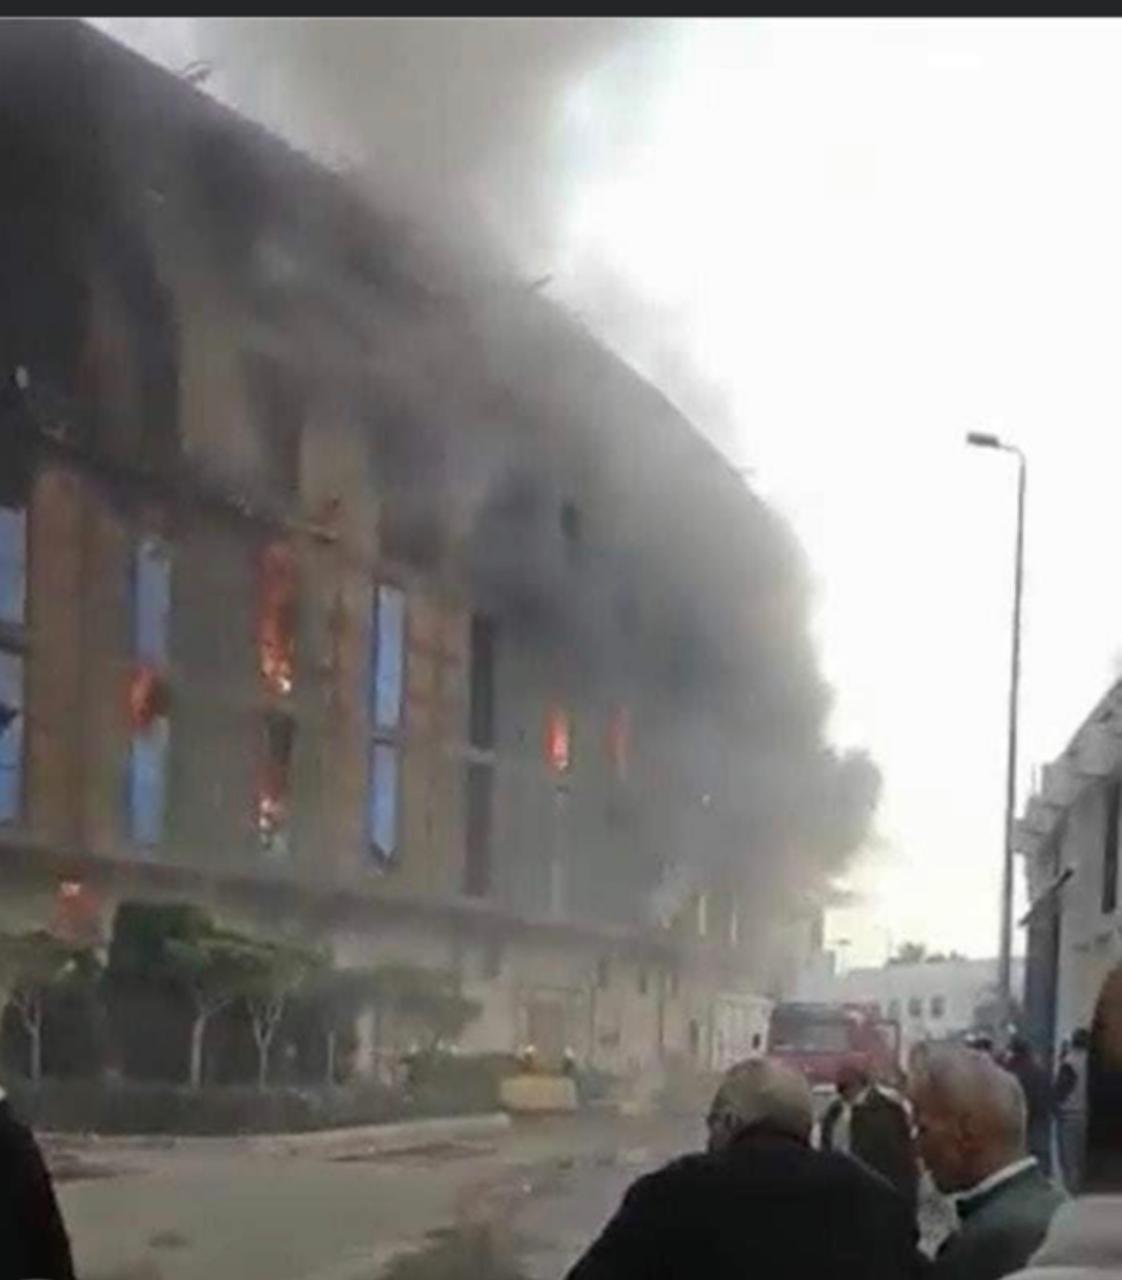   صور وفيديو.. حريق بمبنى مخزن روما التابع للجمارك بميناءالإسكندرية